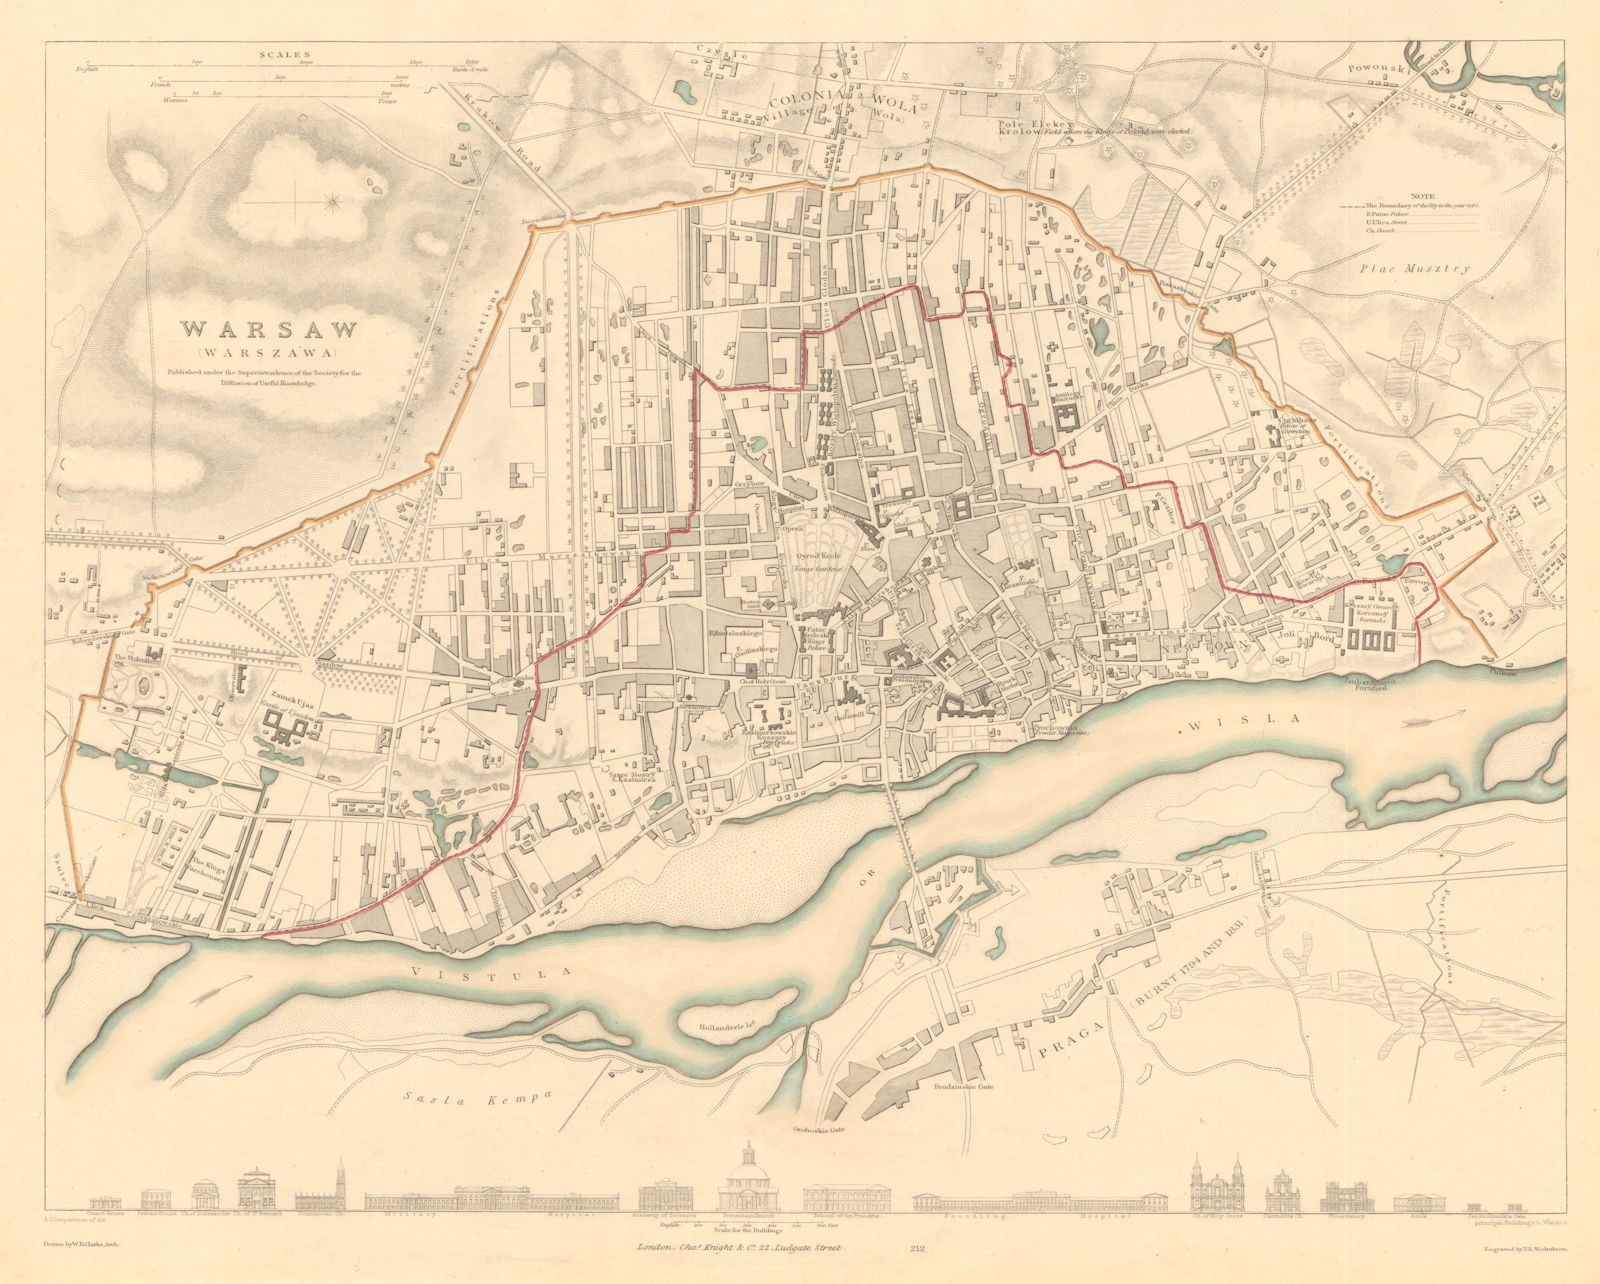 WARSAW WARSZAWA antique town city map plan. Building profiles. Colour. SDUK 1847